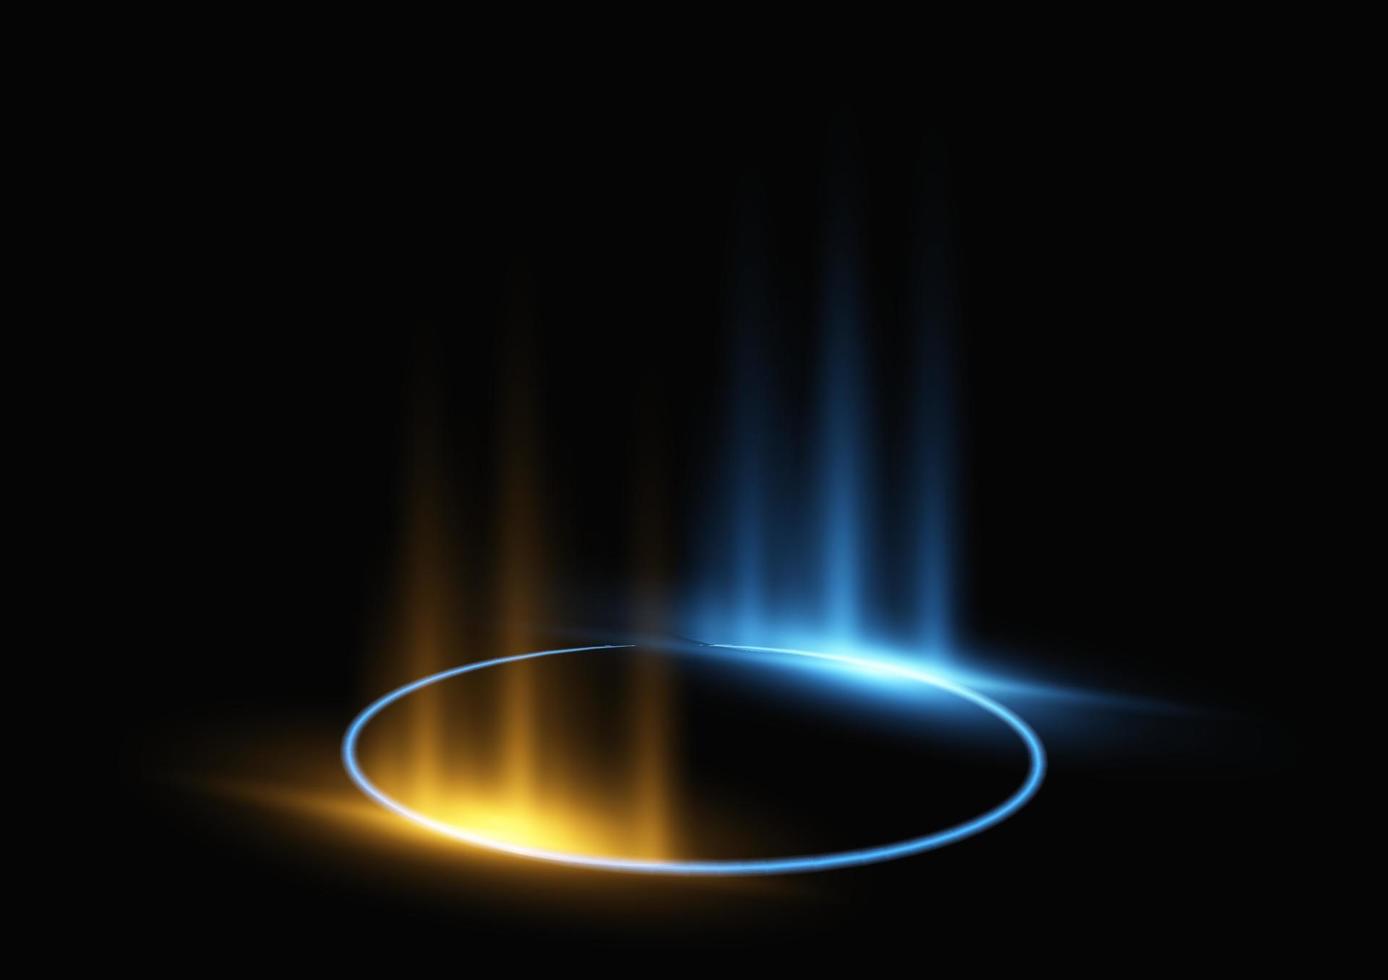 luz de círculo moderno abstracto, efecto de tecnología de anillo en la ilustración de vector de fondo negro.